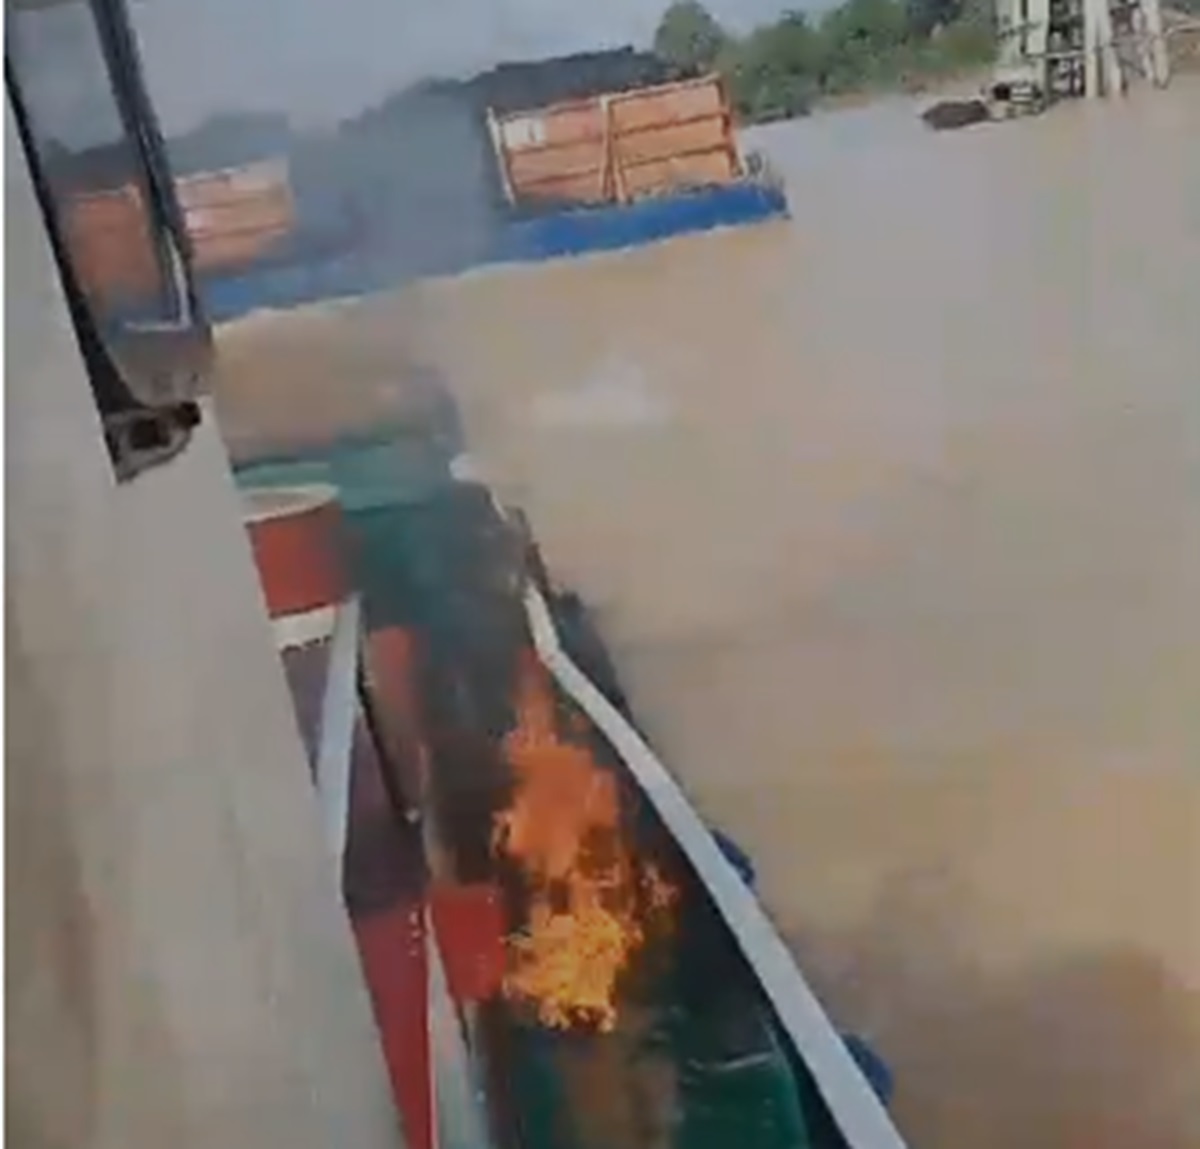 BREAKING NEWS: Tugboat Penarik Tongkang Batu Bara Terbakar di Perairan Tembesi